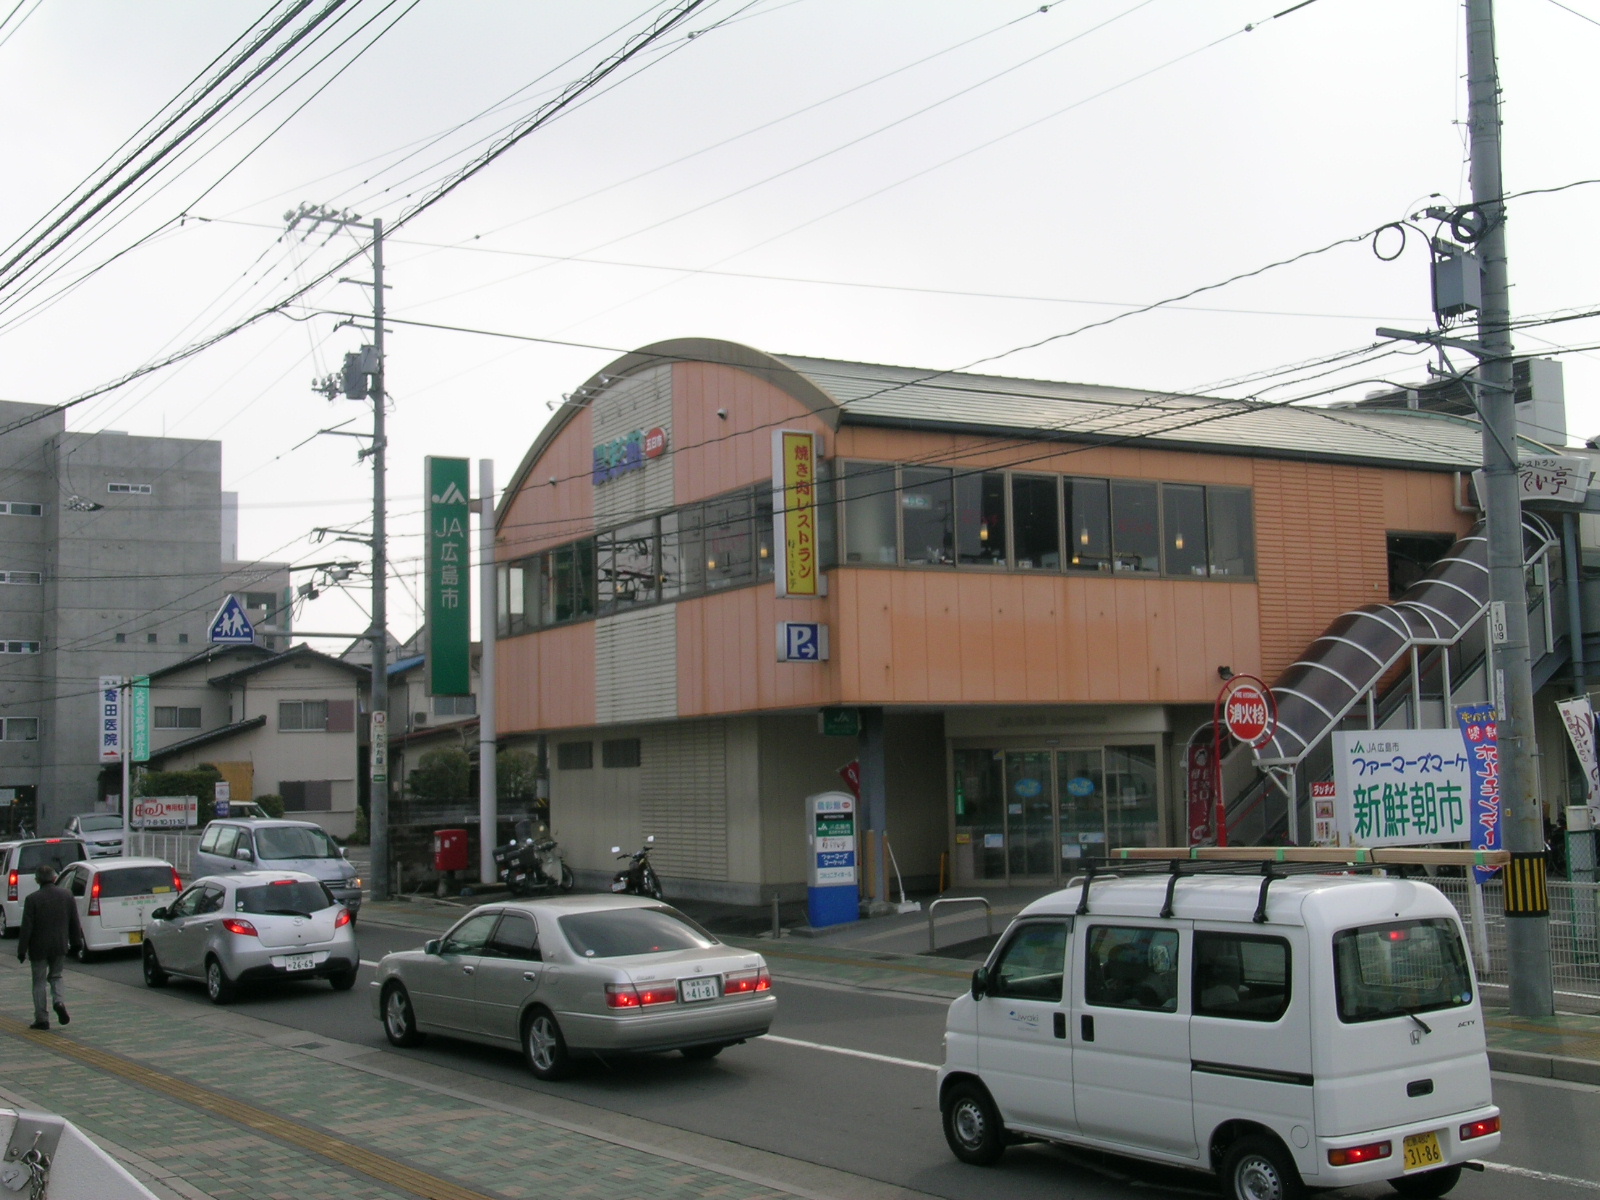 Bank. JA Hiroshima Itsukaichi Central Branch (Bank) to 427m